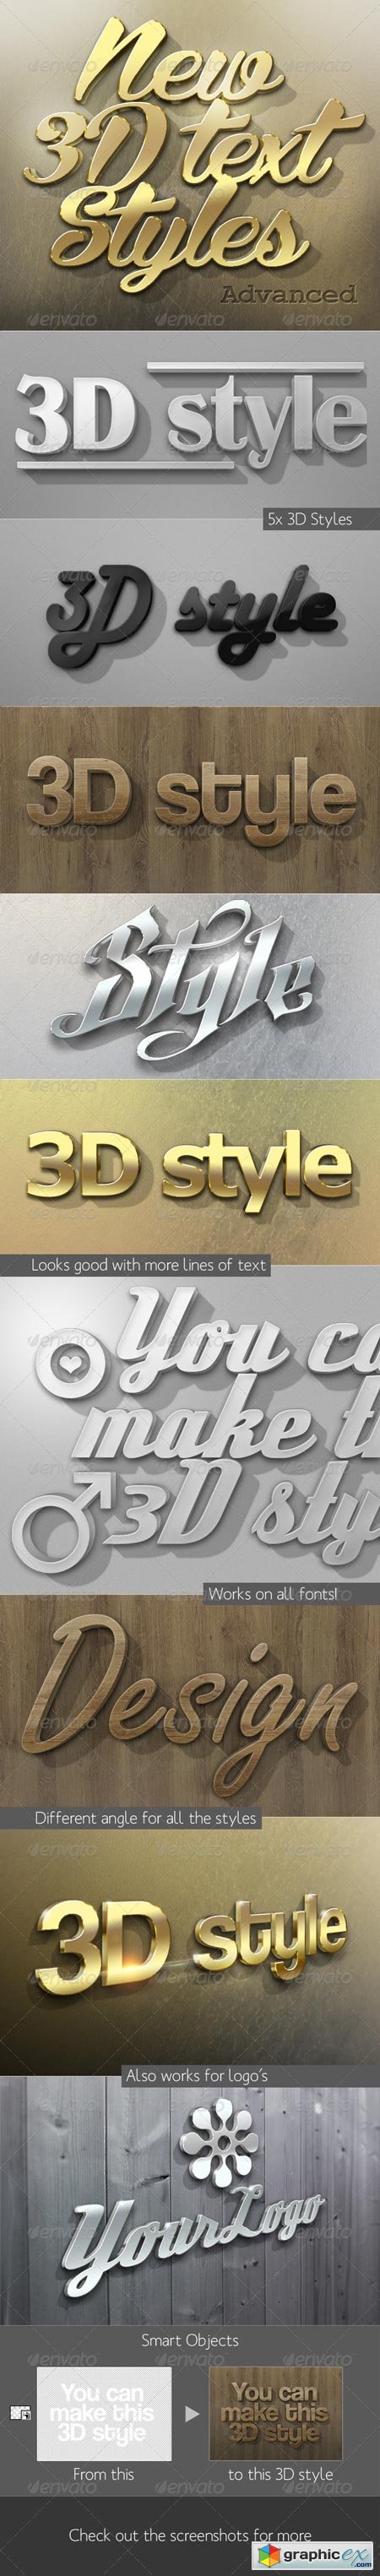 New 3D Text Styles Advanced 3803506